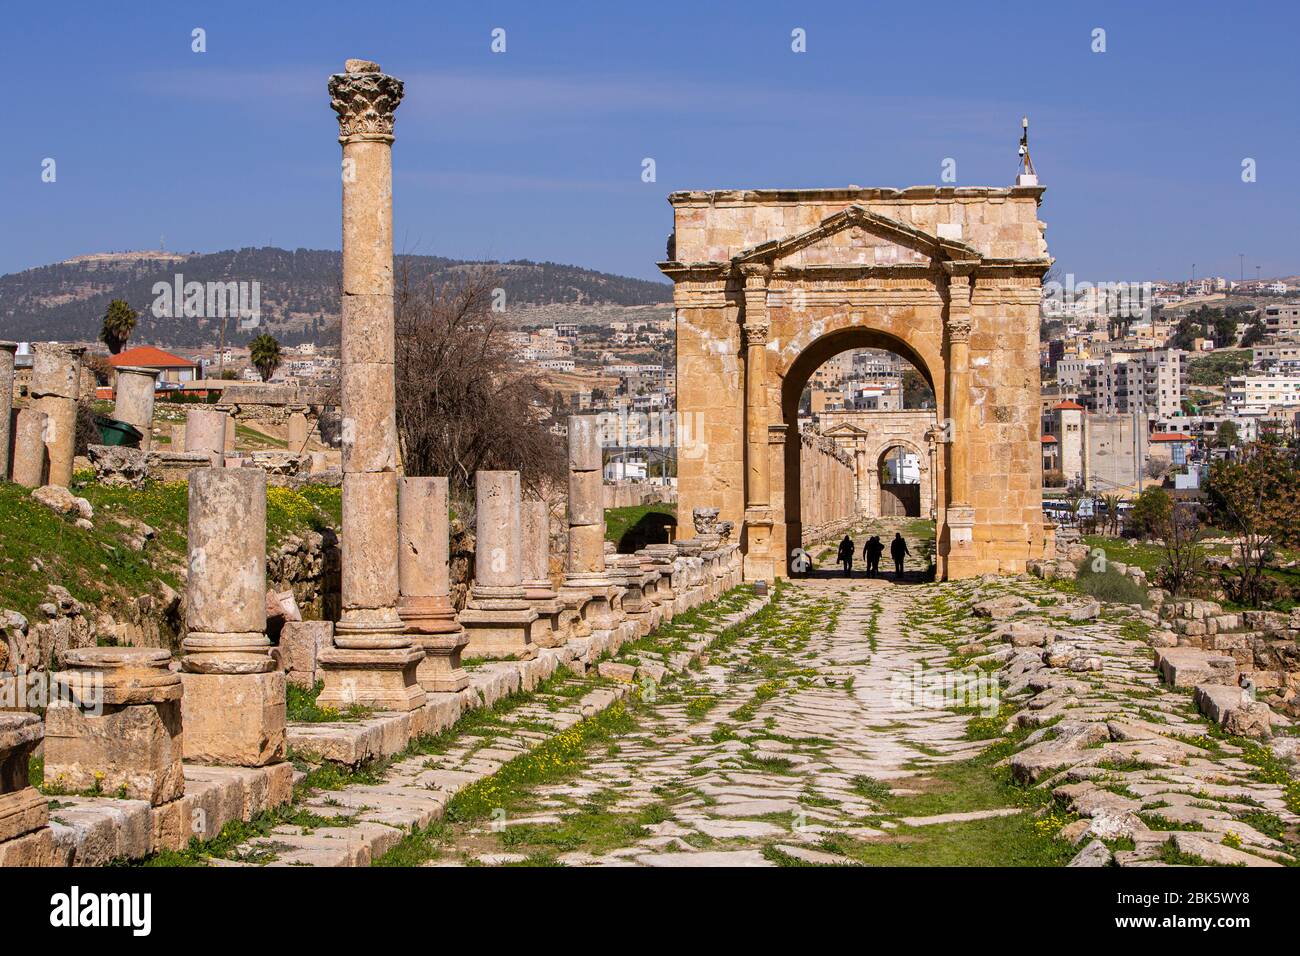 Sito archeologico di Jerash, antiche rovine romane, Giordania Foto Stock